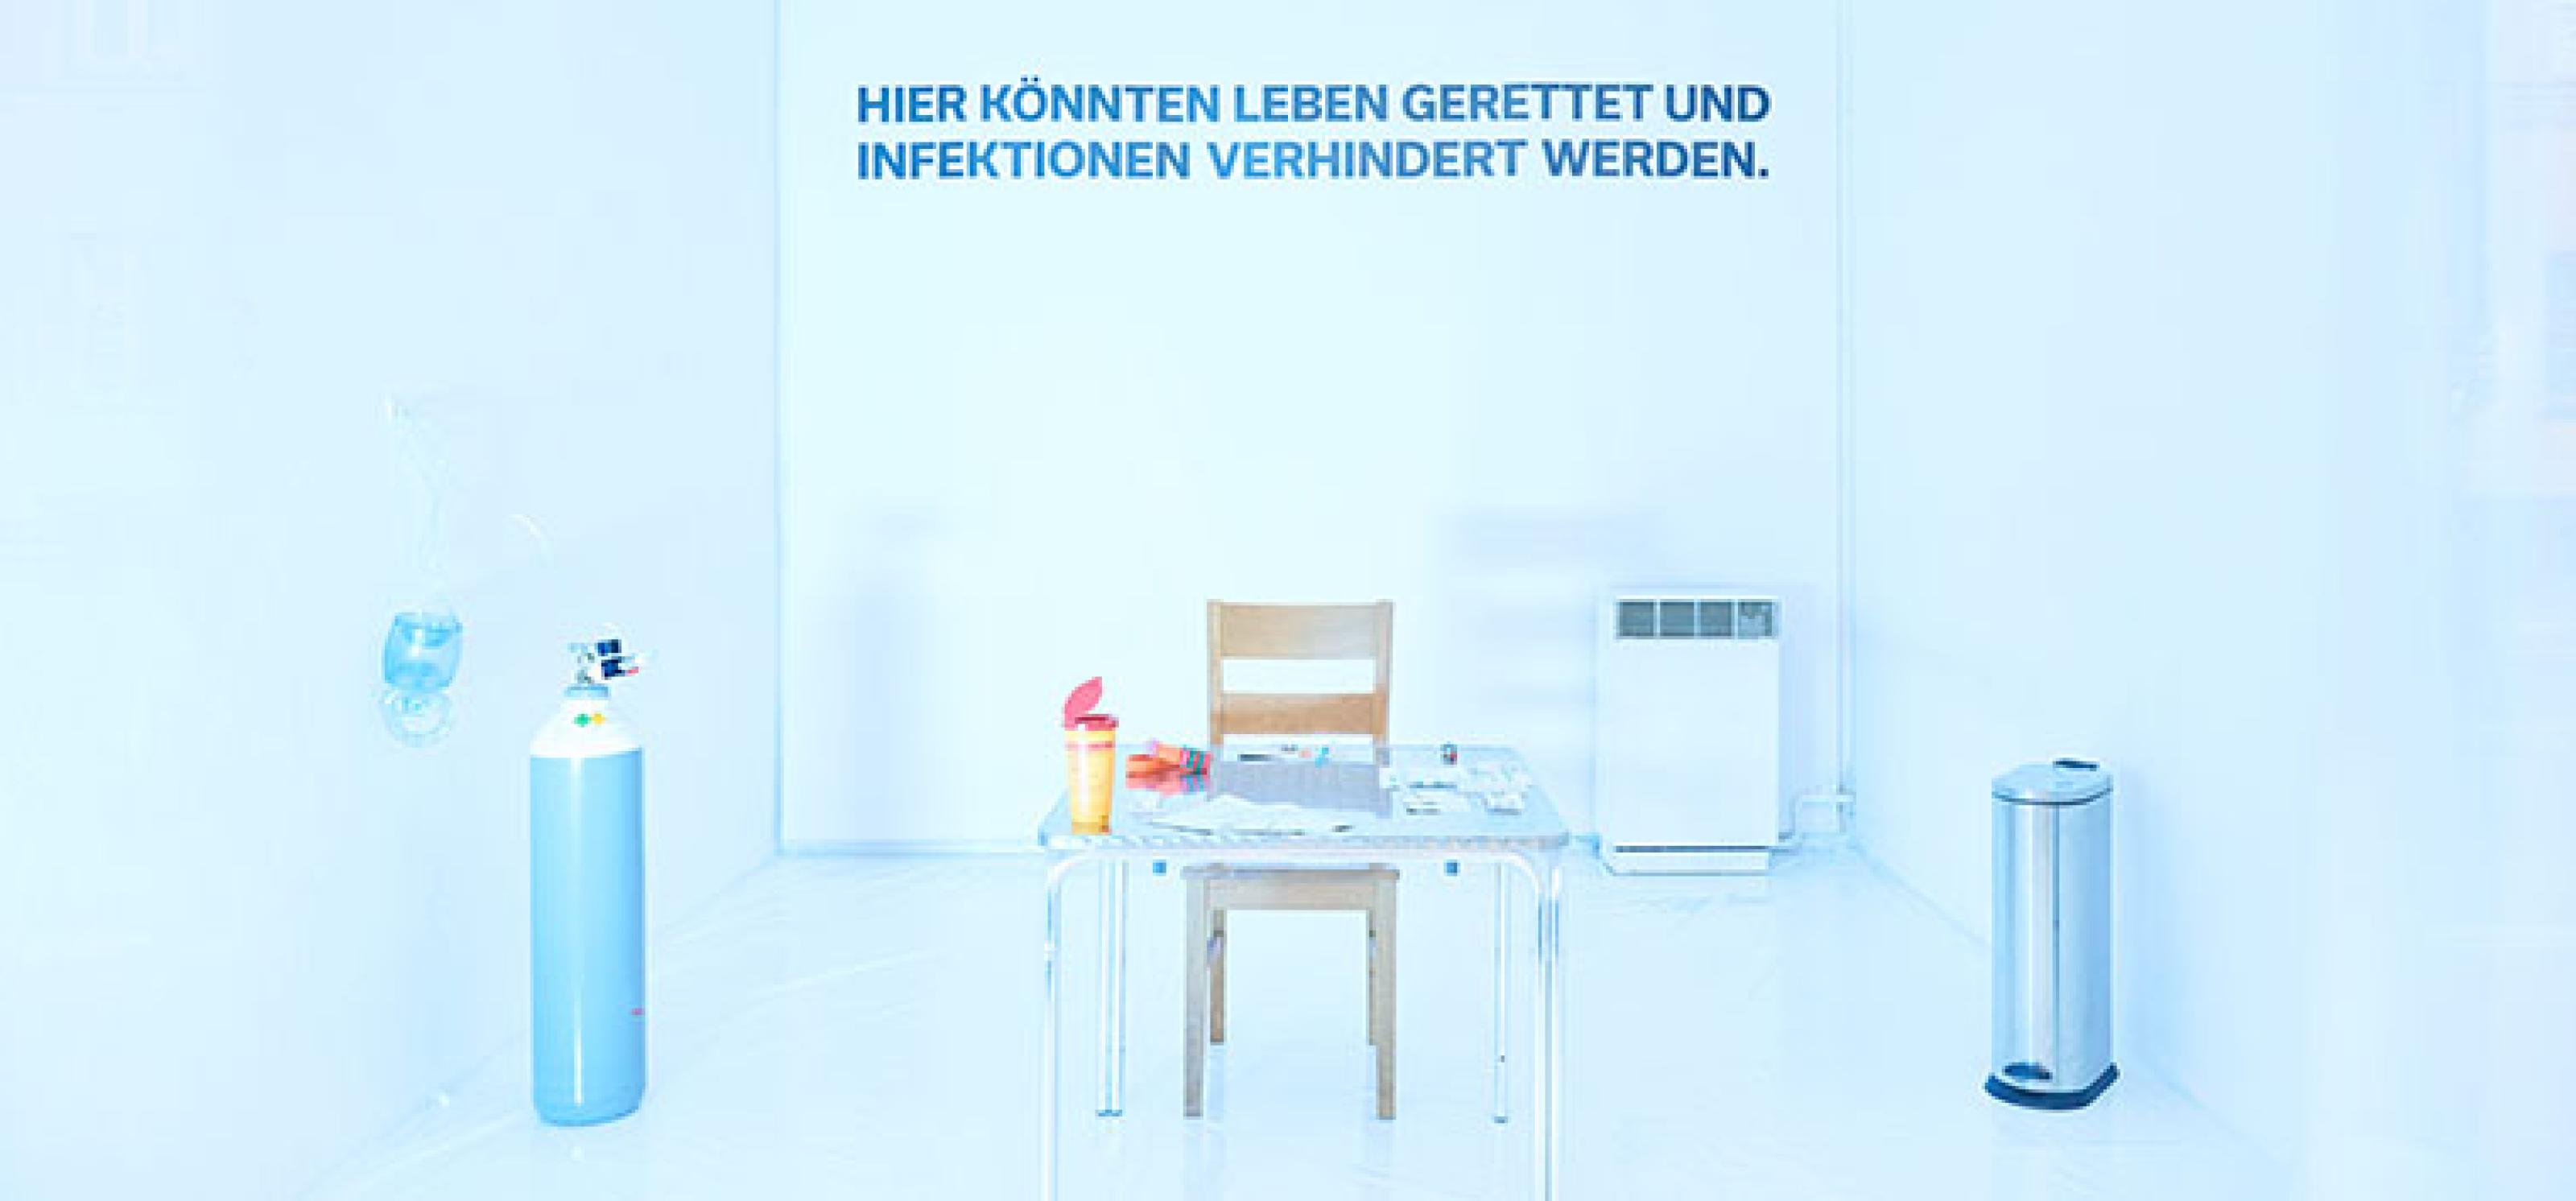 Pop-up drug consumption room by Deutsche Aidshilfe in Munich